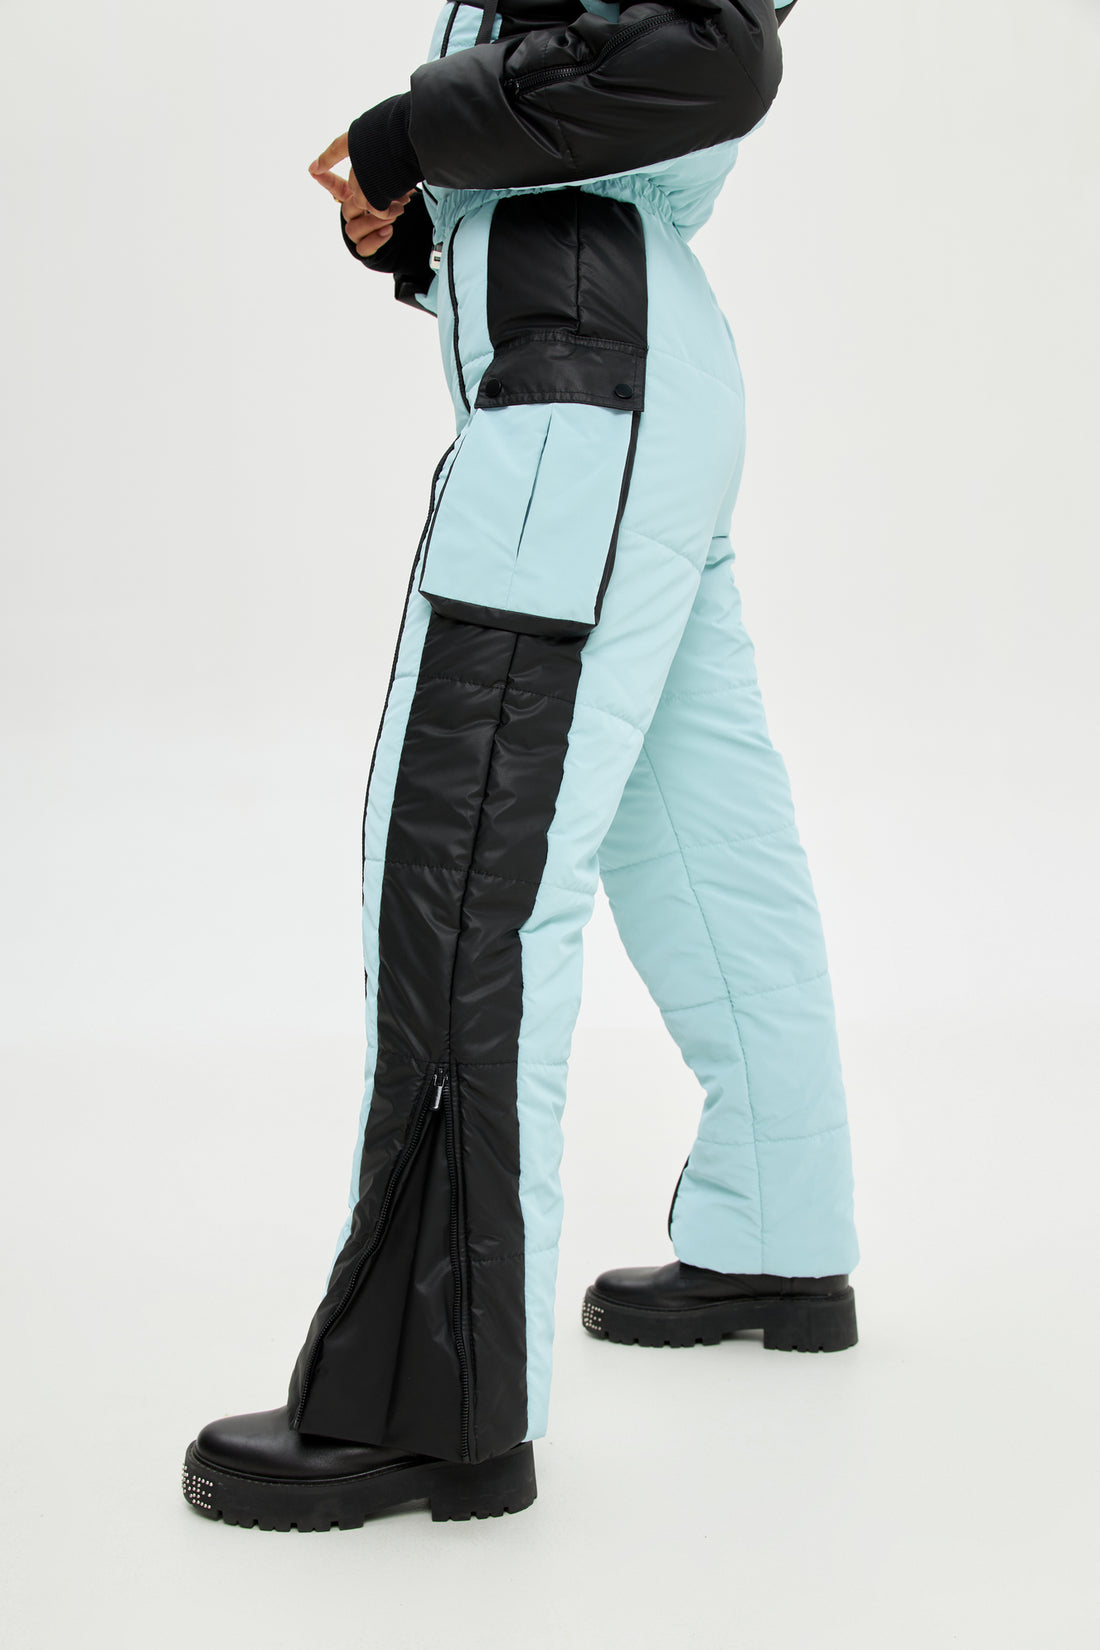 Light blue ski suit for women ETNA - Baby blue snowsuit - Ski jumpsuit outfit Skiwear fashion